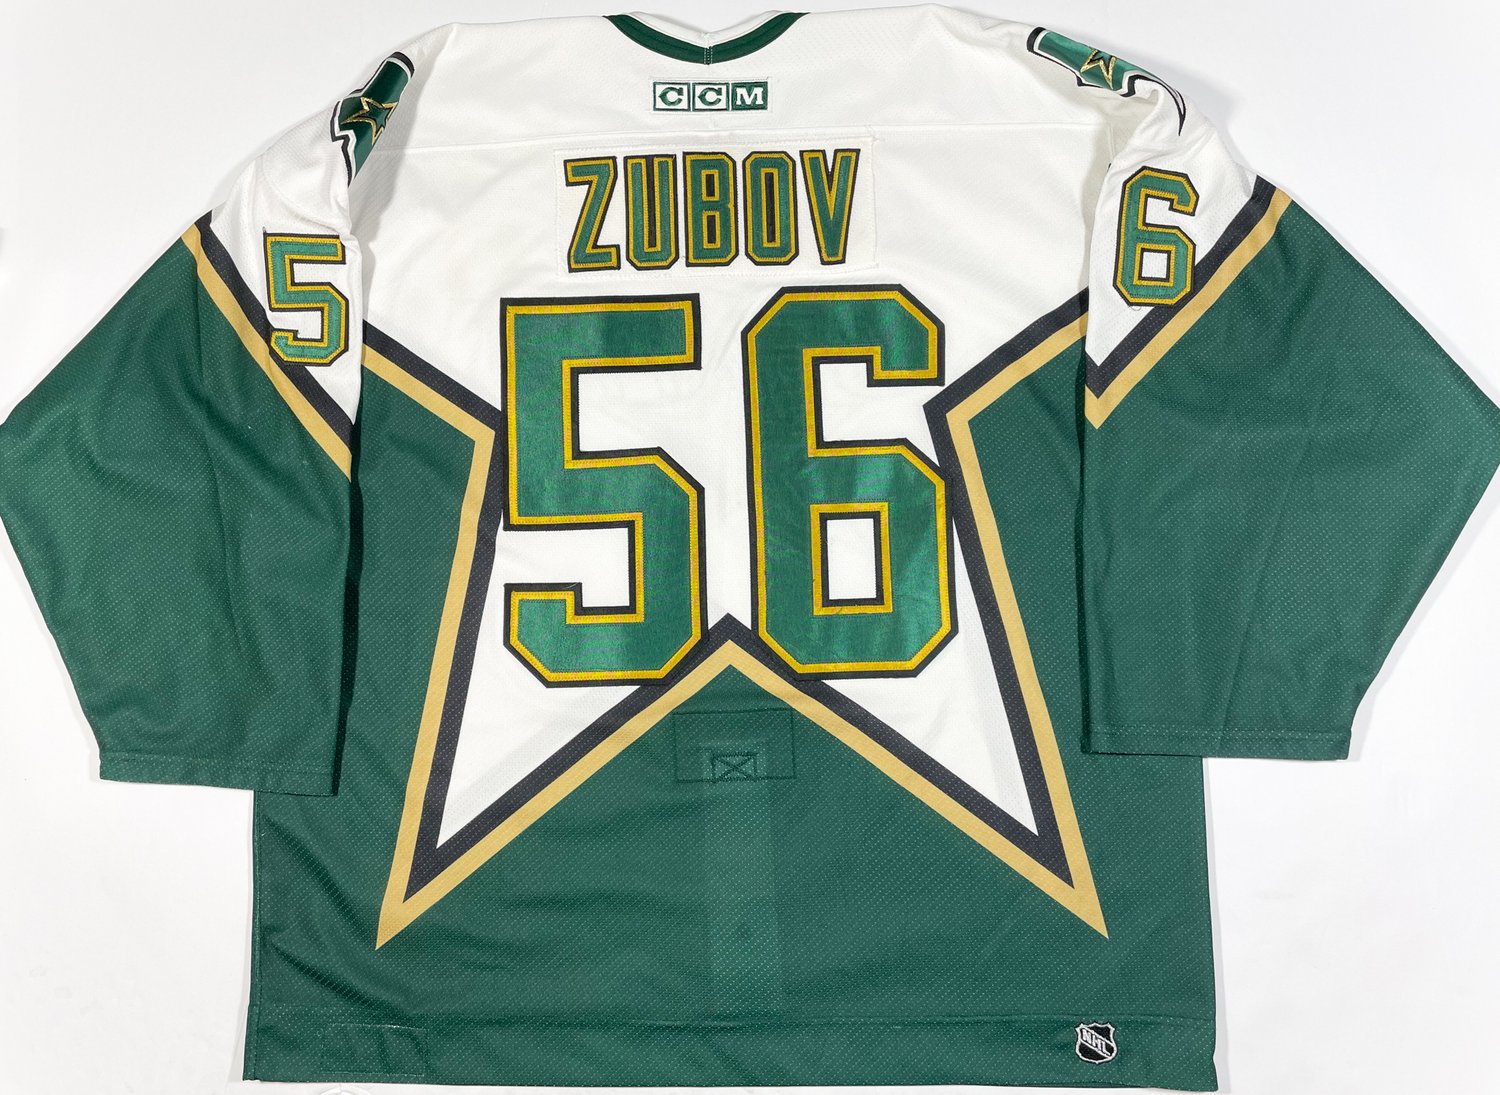 2003-04 Sergei Zubov Game Worn Dallas Stars Jersey.  Hockey